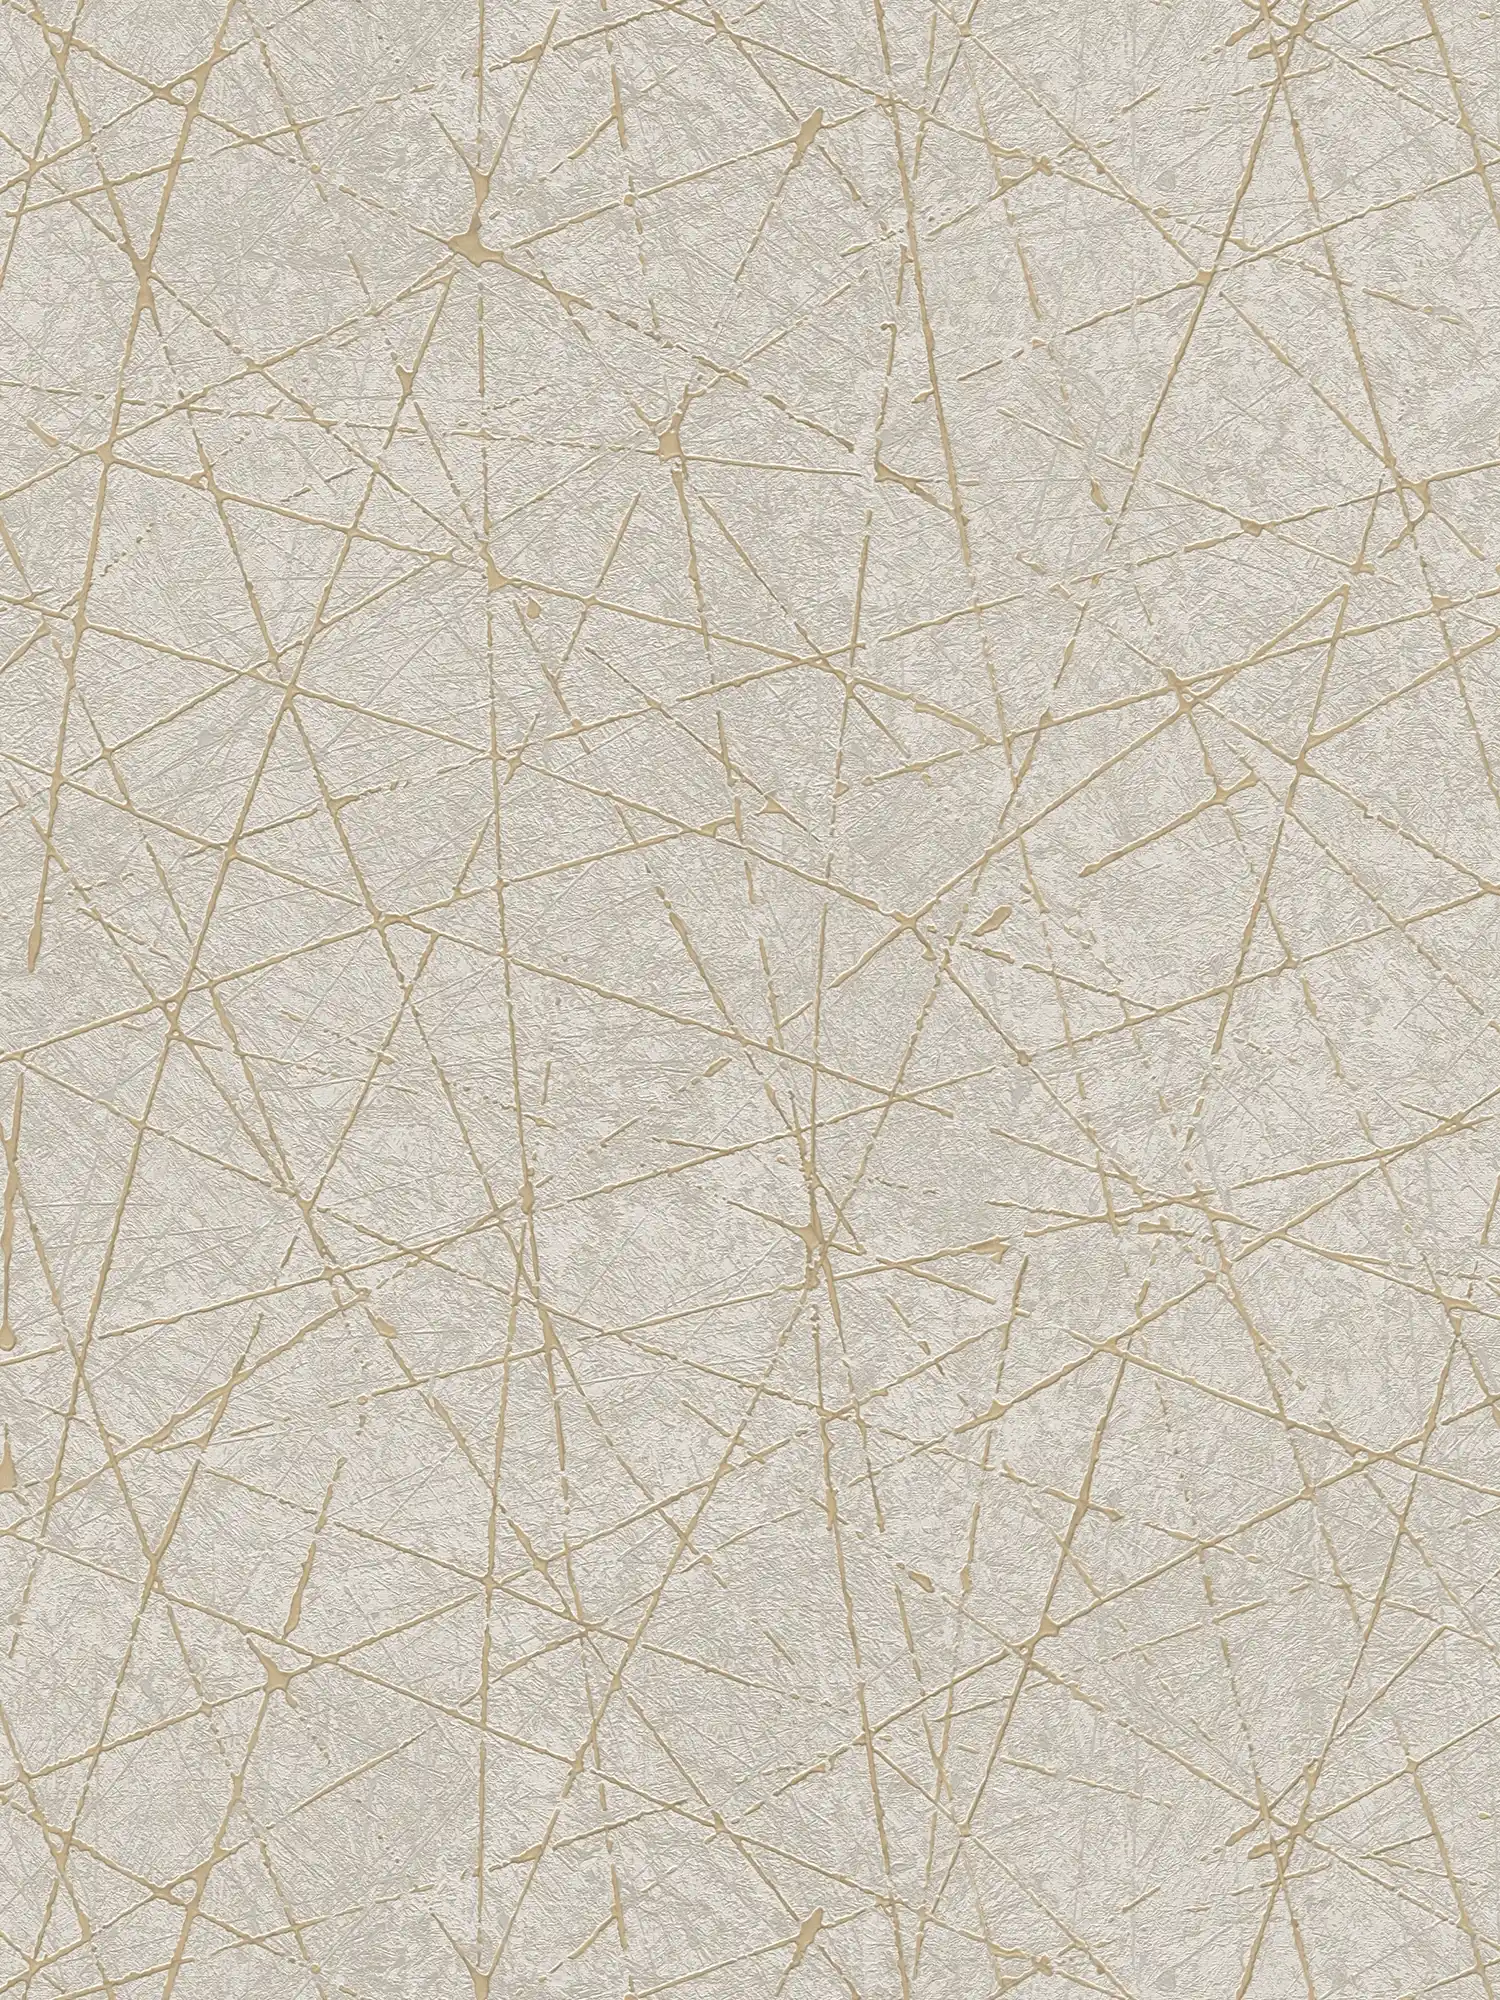 Carta da parati in tessuto non tessuto con linee grafiche ed effetto metallico - crema, grigio, oro
